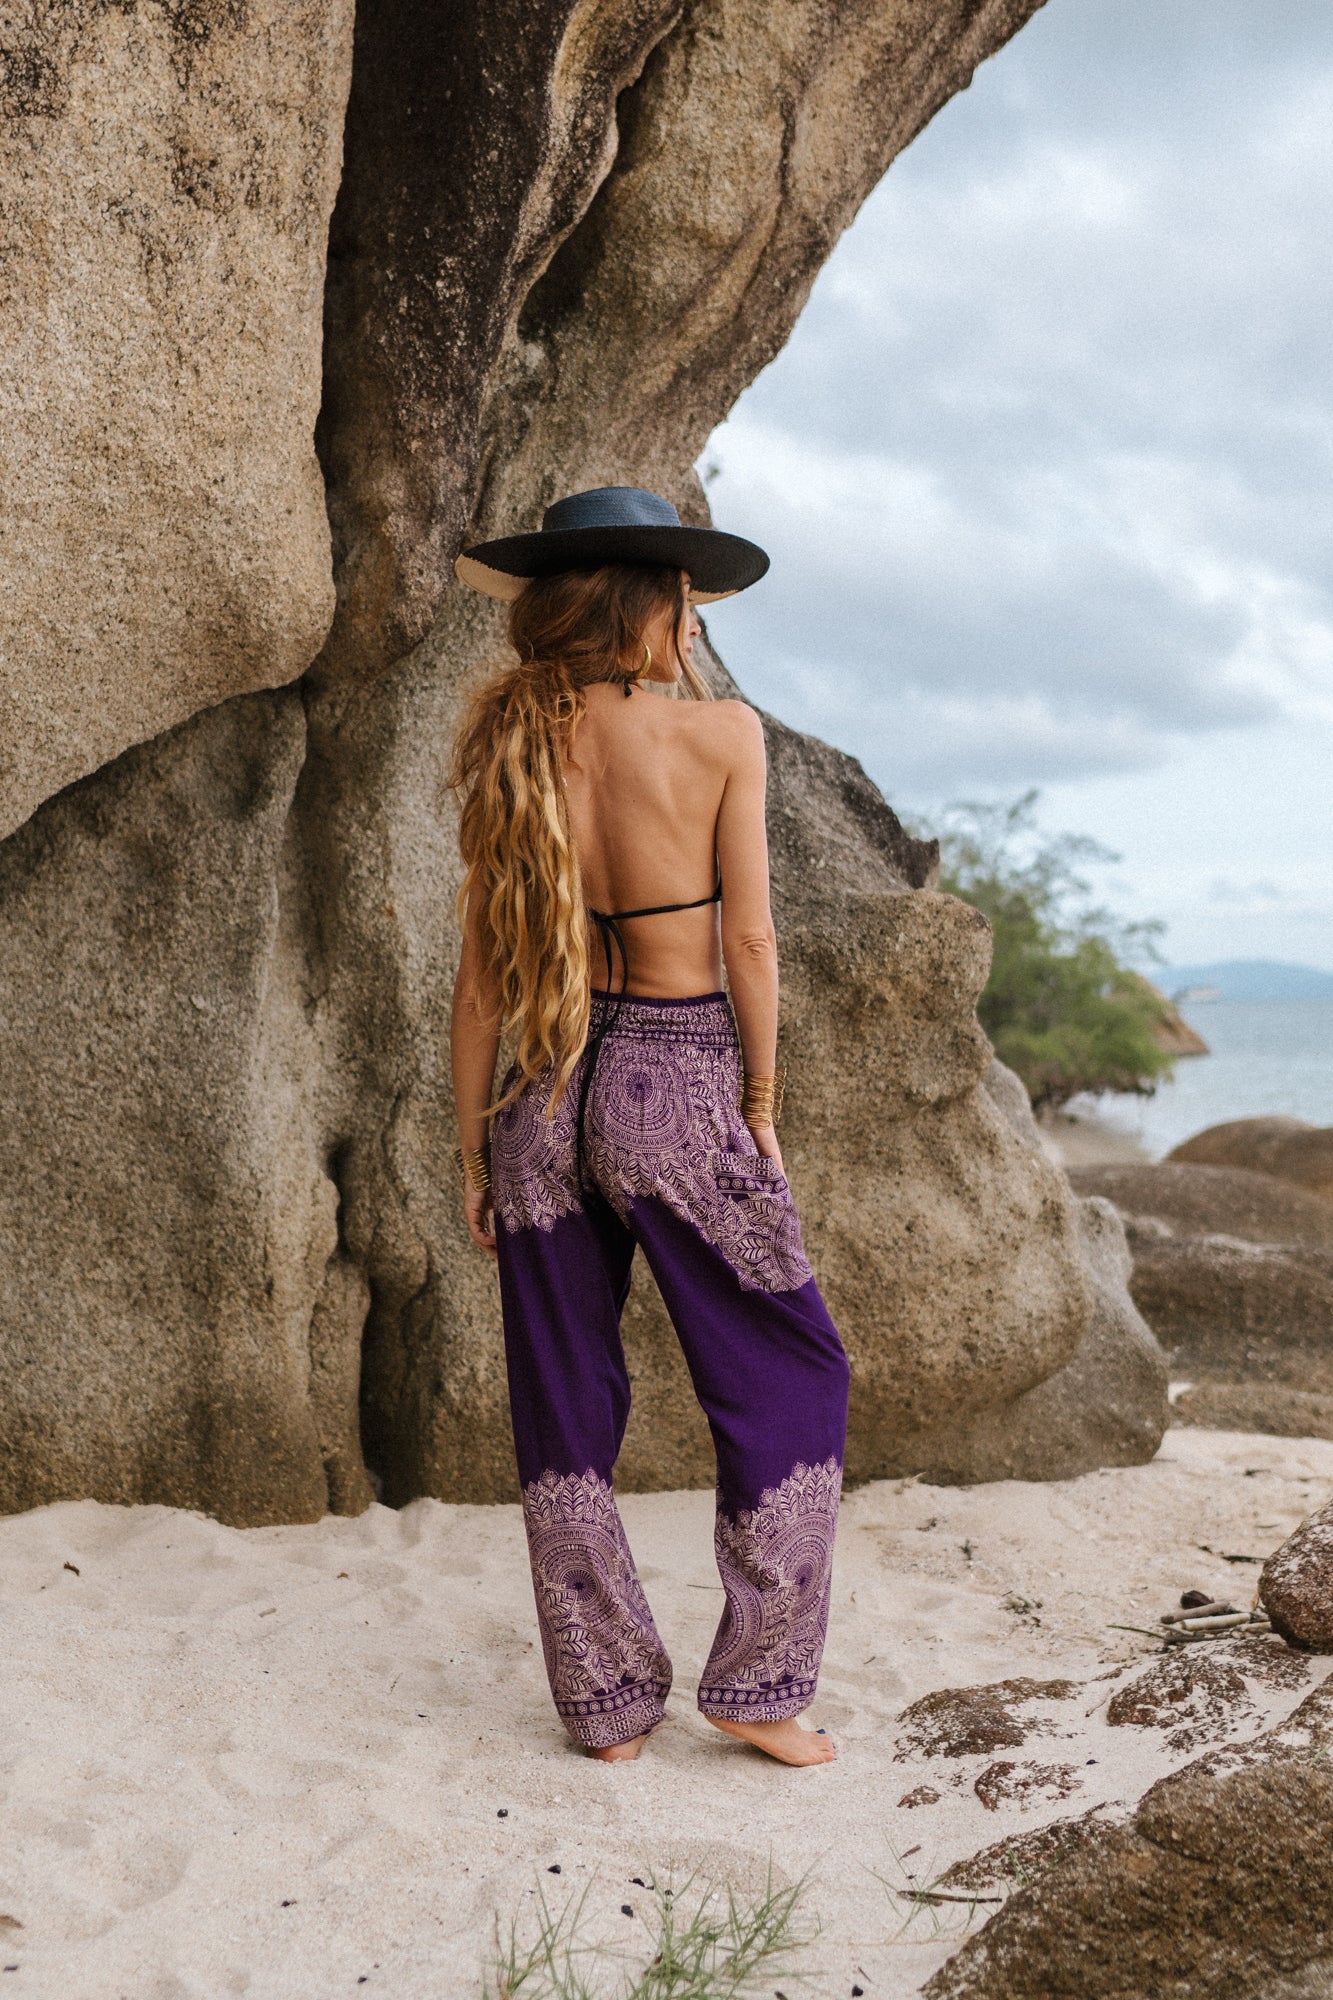 High Crotch Harem Pants - Plain Mandala Print - Purple